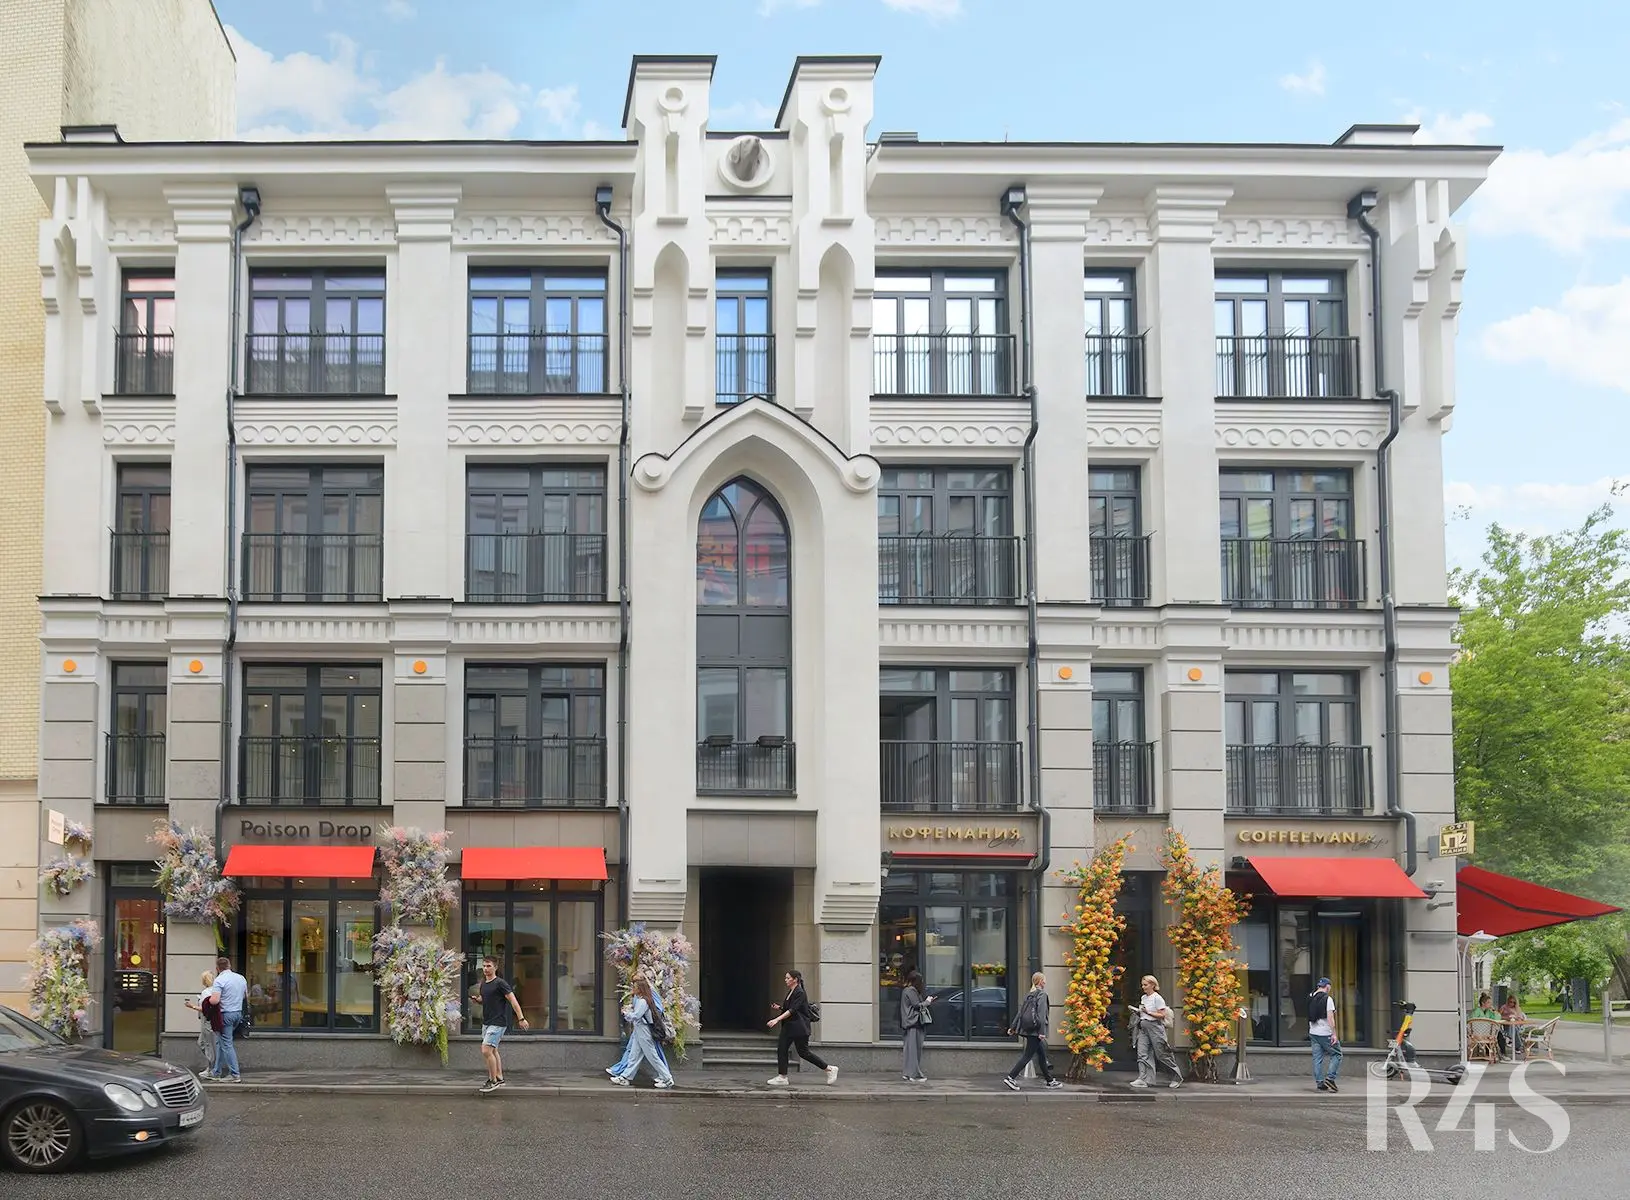 Продажа готового арендного бизнеса площадью 189.9 м2 в Москве: Спиридоньевский переулок, 17 R4S | Realty4Sale